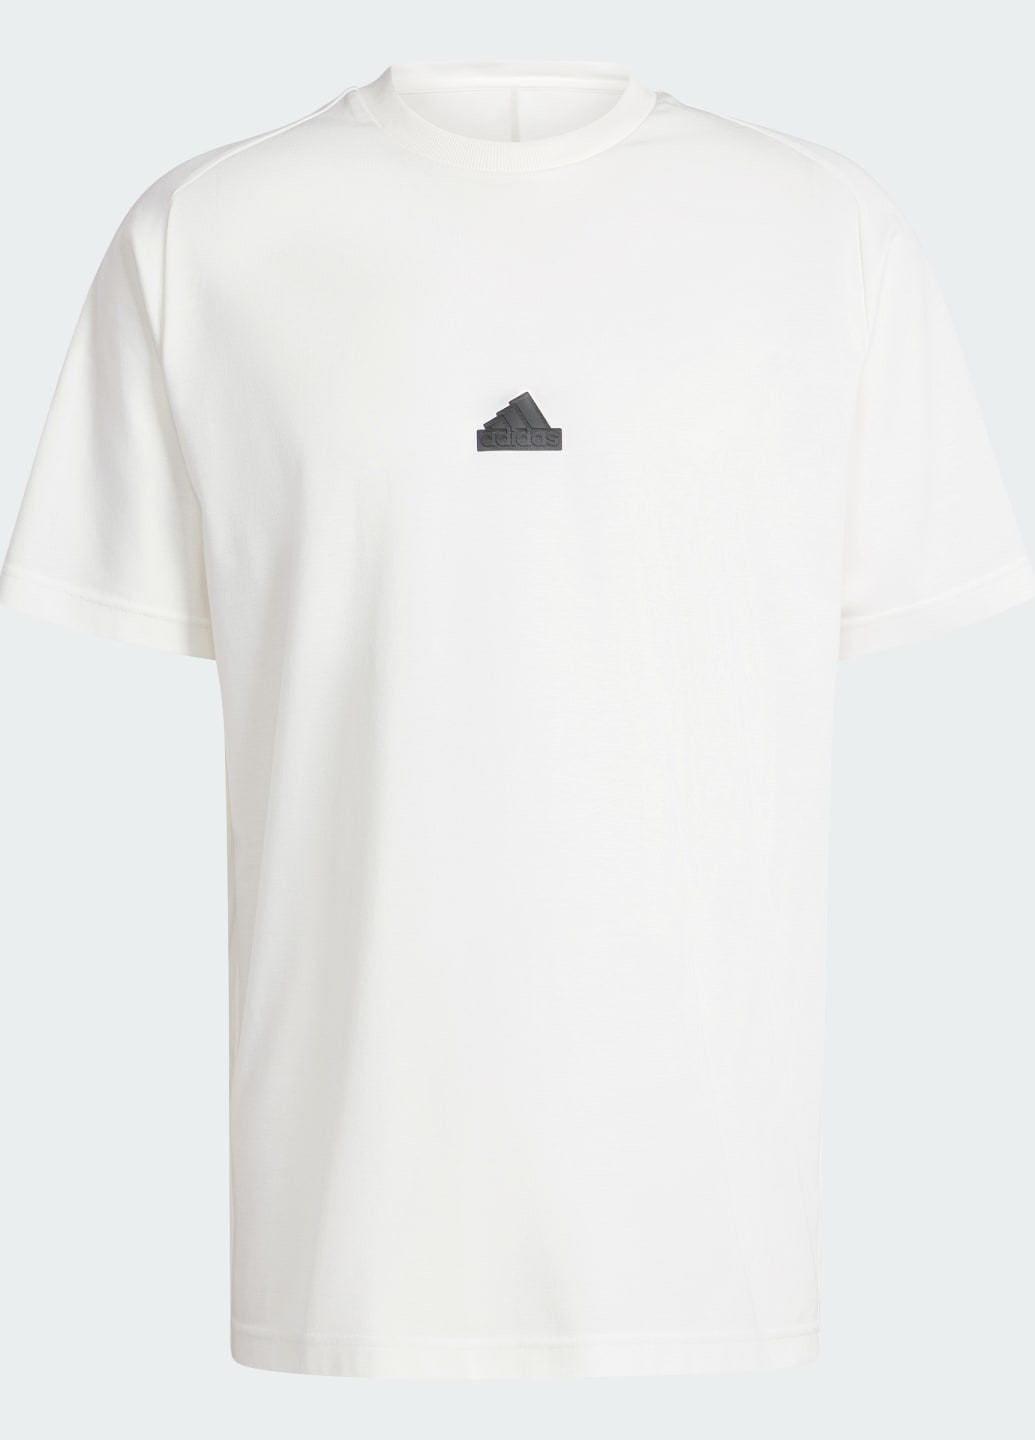 Біла футболка z.n.e. adidas